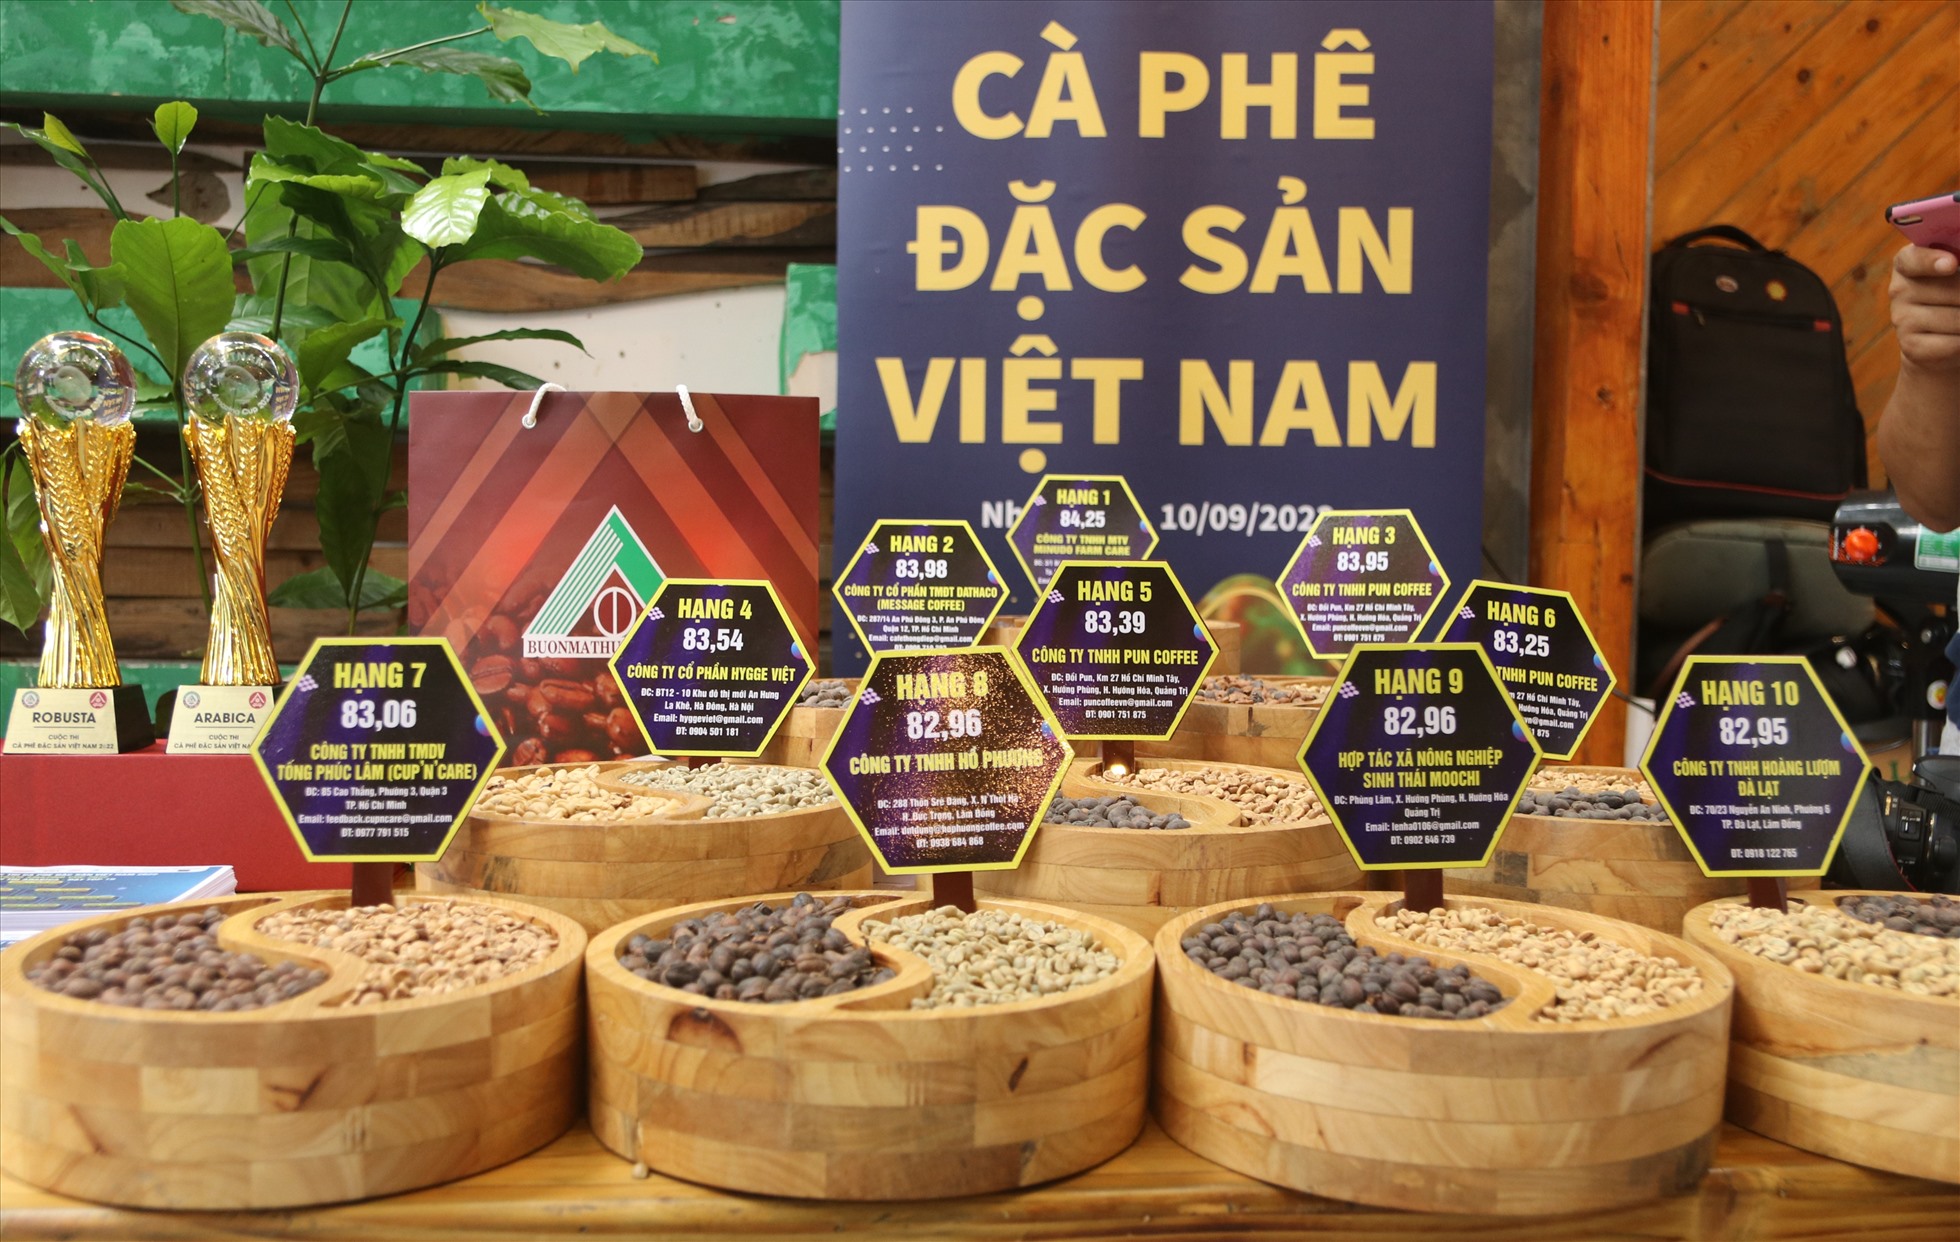 Trên thế giới Cà phê đặc sản (Specialty Coffee) xuất hiện gần 50 năm nhưng tại Việt Nam dòng cà phê cao cấp này mới được cộng đồng người trông cà phê hướng đến khoảng 4 năm nay.